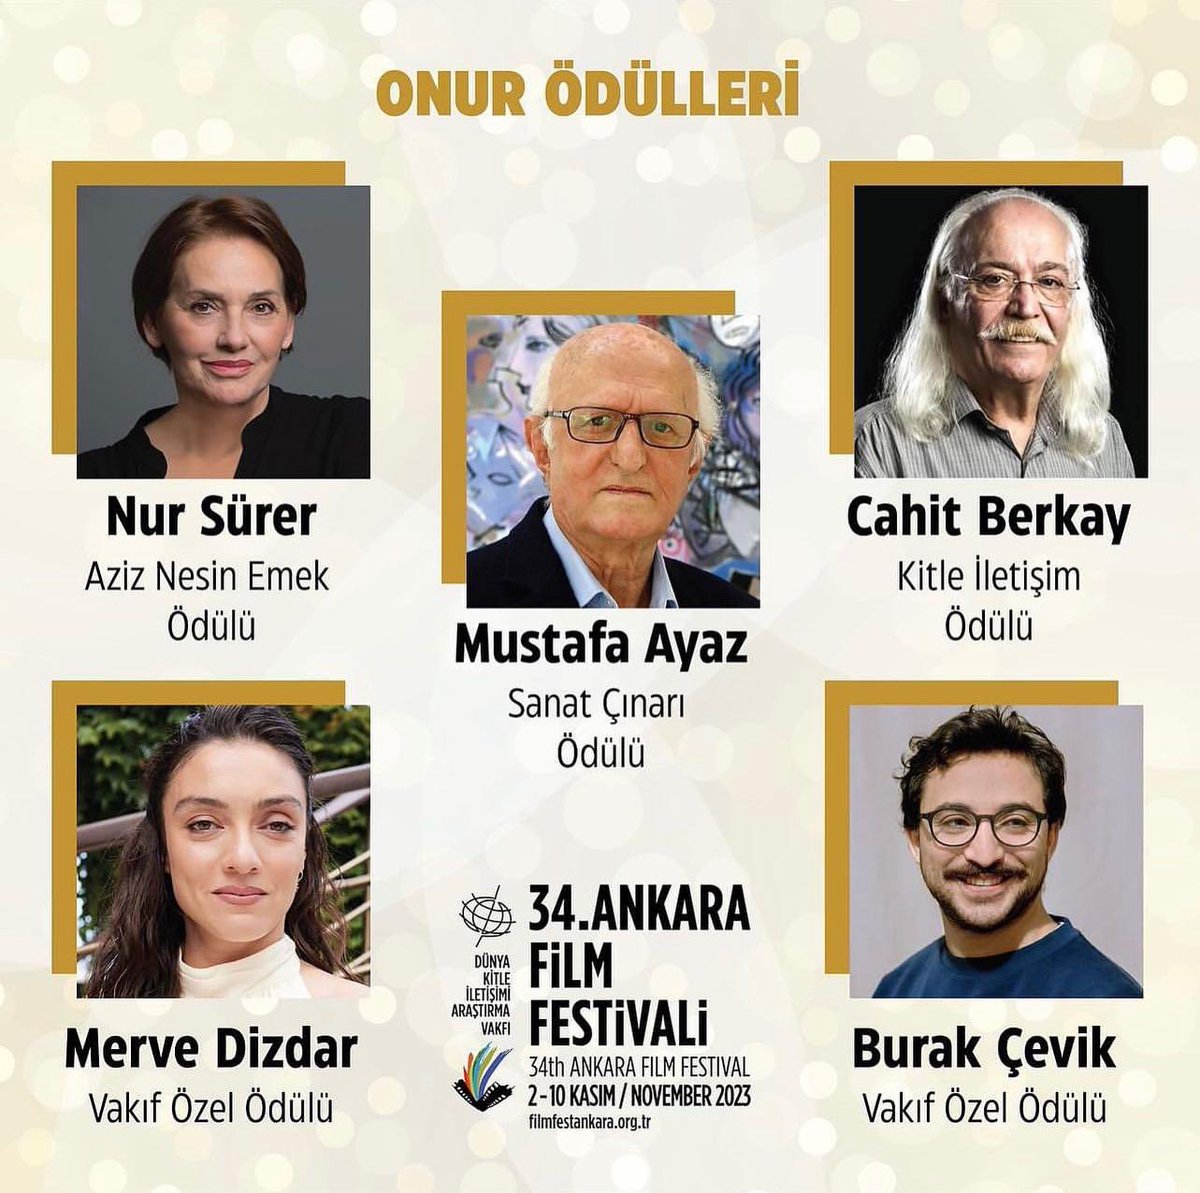 34. @AnkaraUFF Onur Ödülleri'ni kazananlar belli oldu. Ödül törenimizi 2 Kasım akşamı @Buyulu_Fener 'de yapacağız. 
İyi ki #sinema var... @merveedizdar @cahit_berkay @bu_cevik #nursürer #mustafaayaz